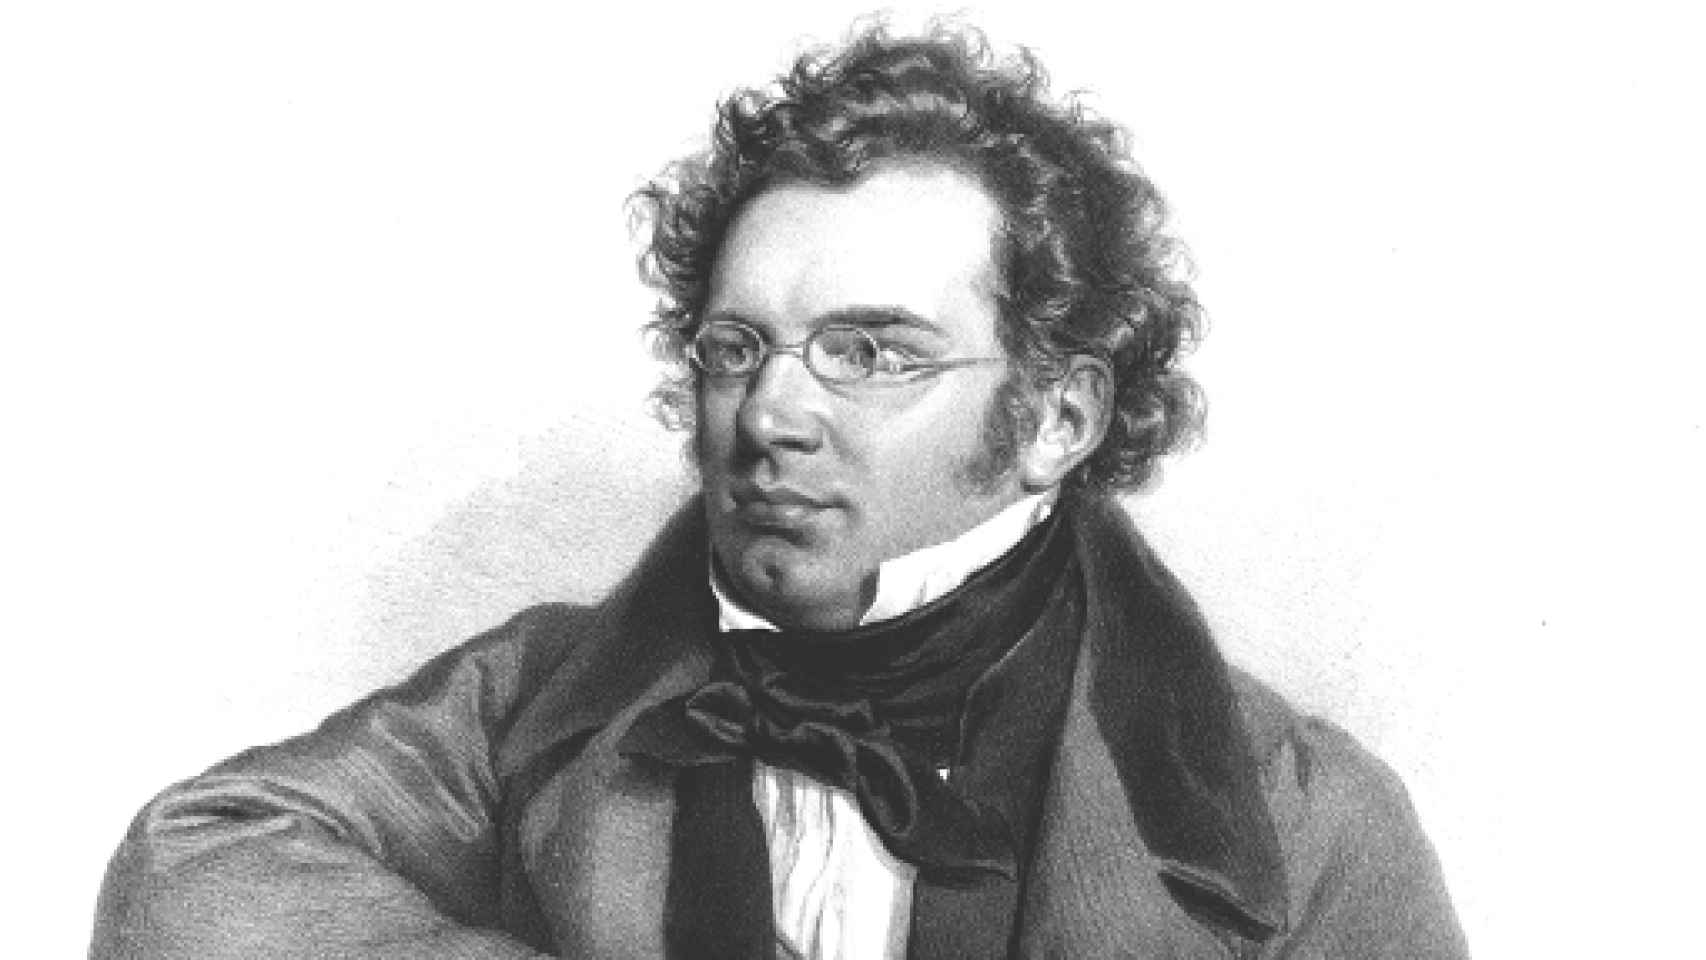 Image: Viaje de invierno de Schubert. Anatomía de una obsesión